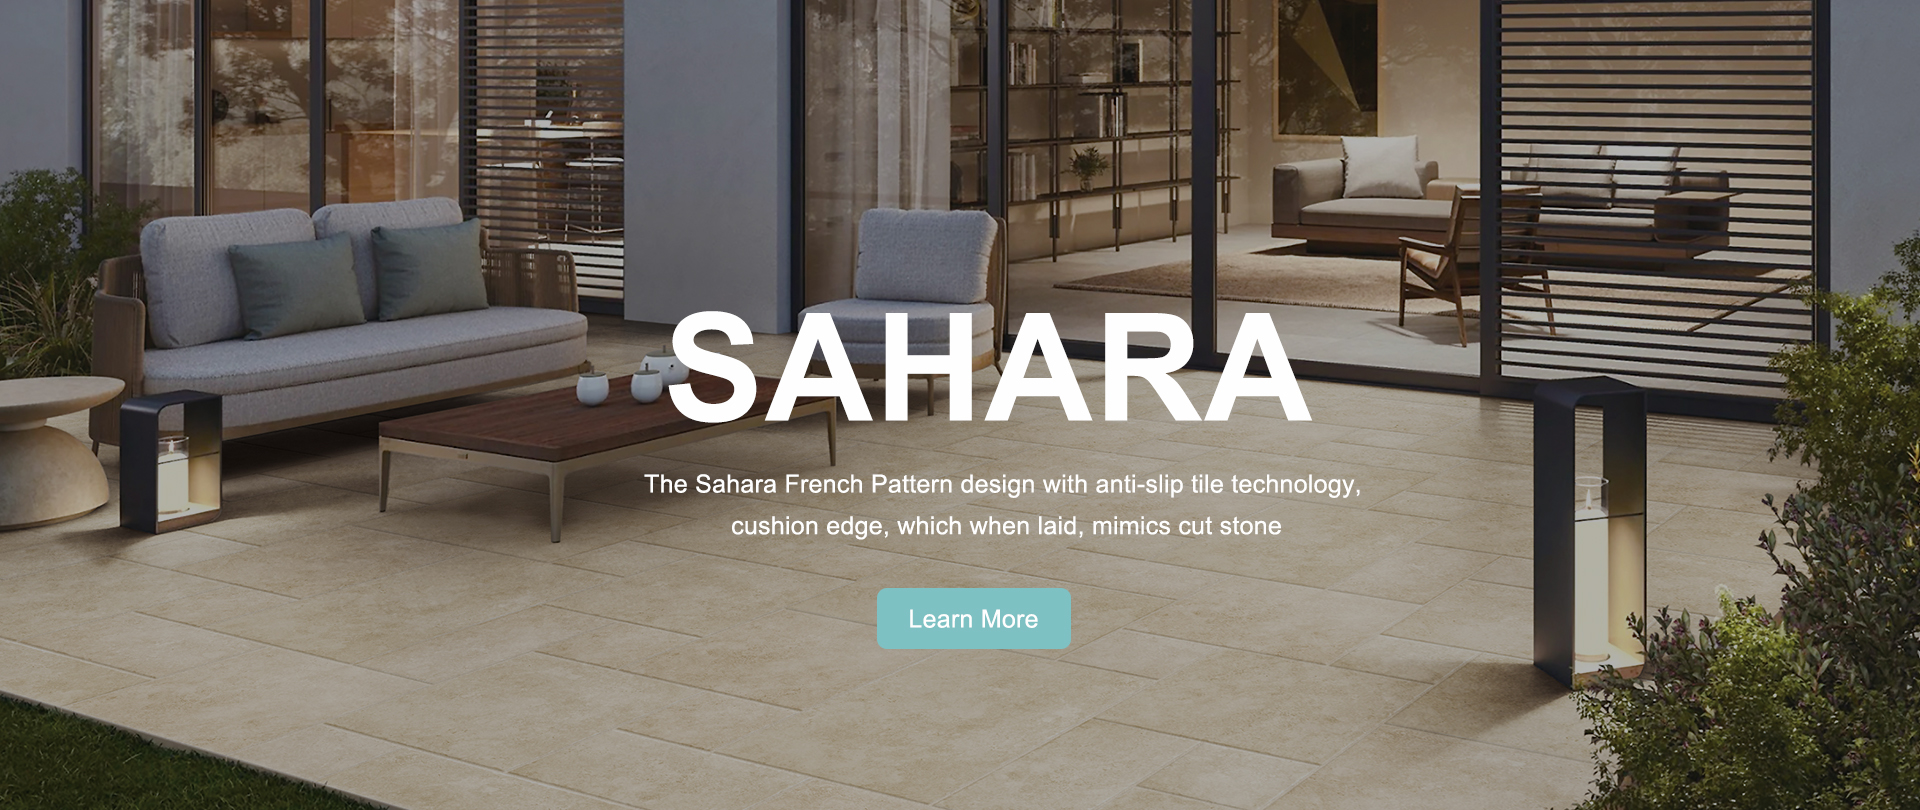 SAHARA fransk mønster